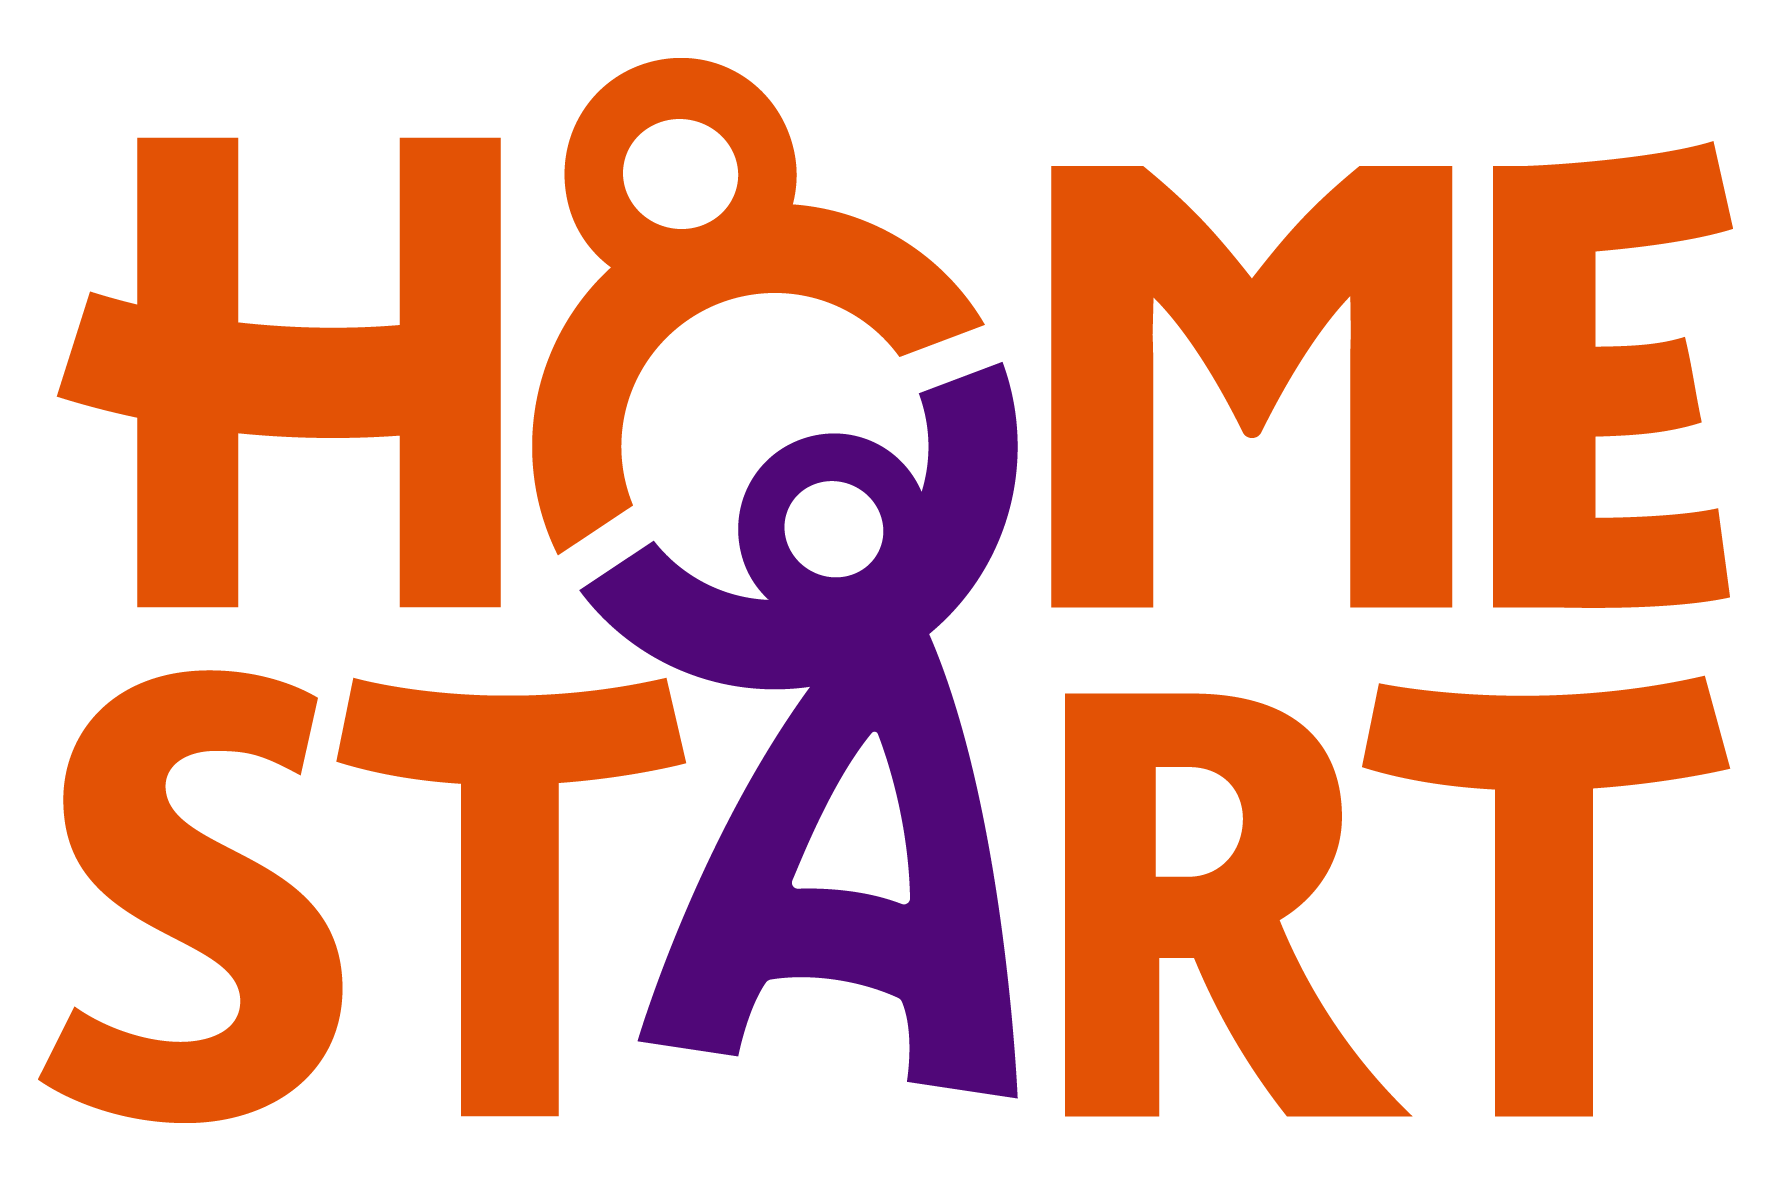 Home Start Logo